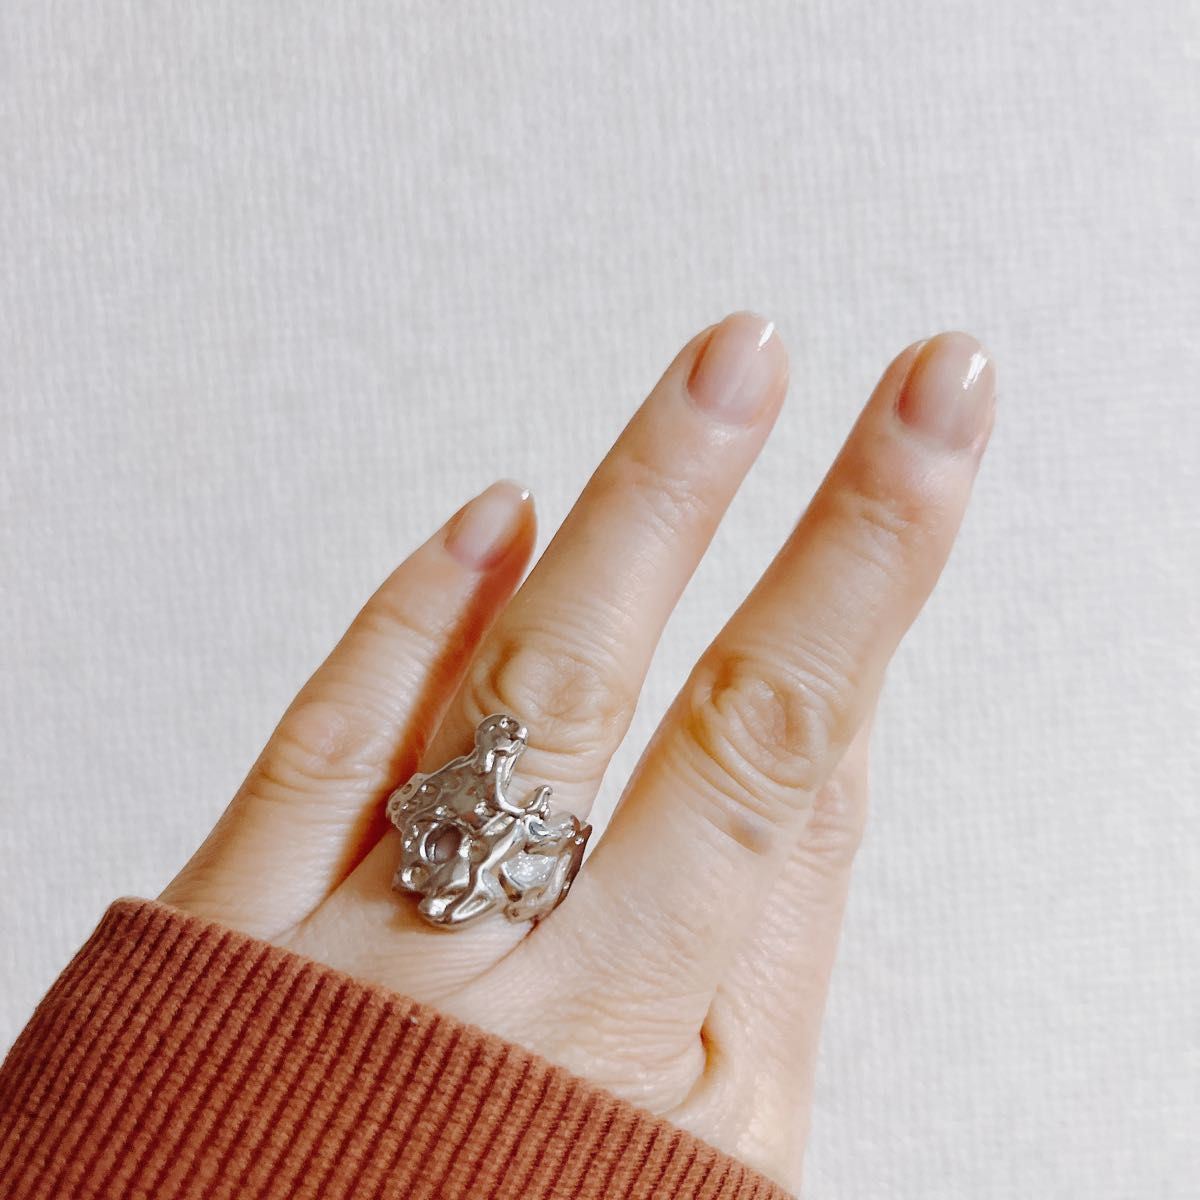 シルバーリング 925 銀 凸凹 溶岩 ラバストーン アシンメトリー 韓国 指輪